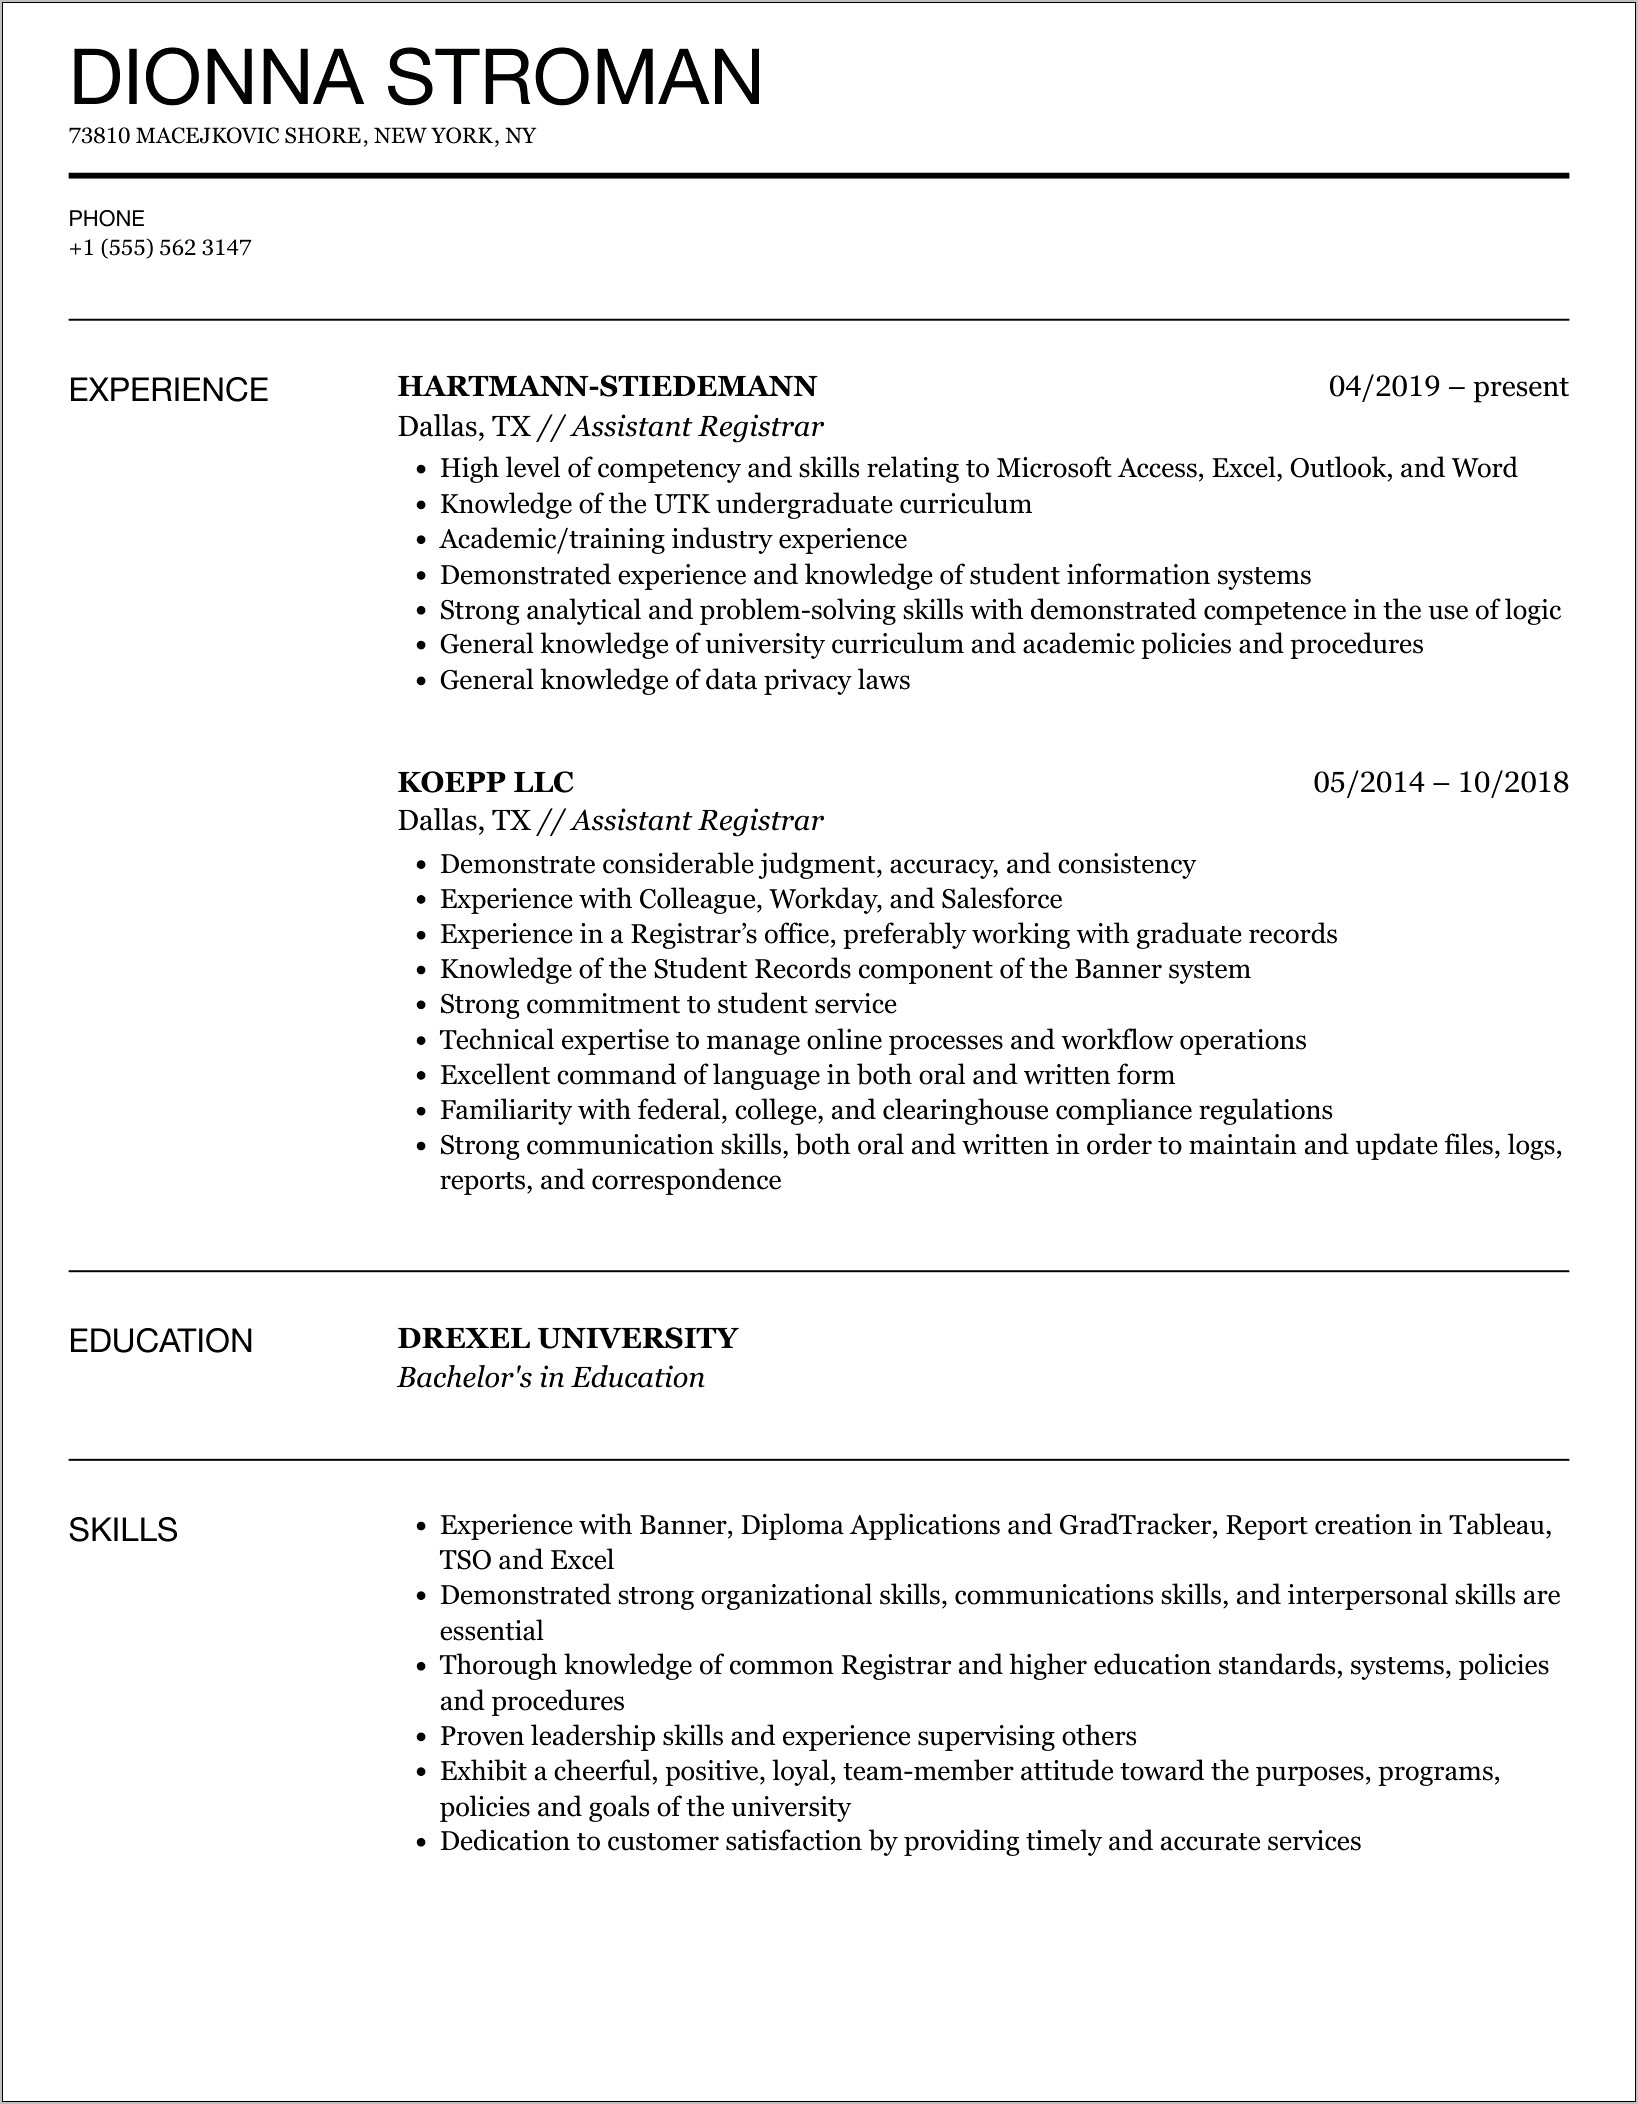 Example Skill Resume For Registrar